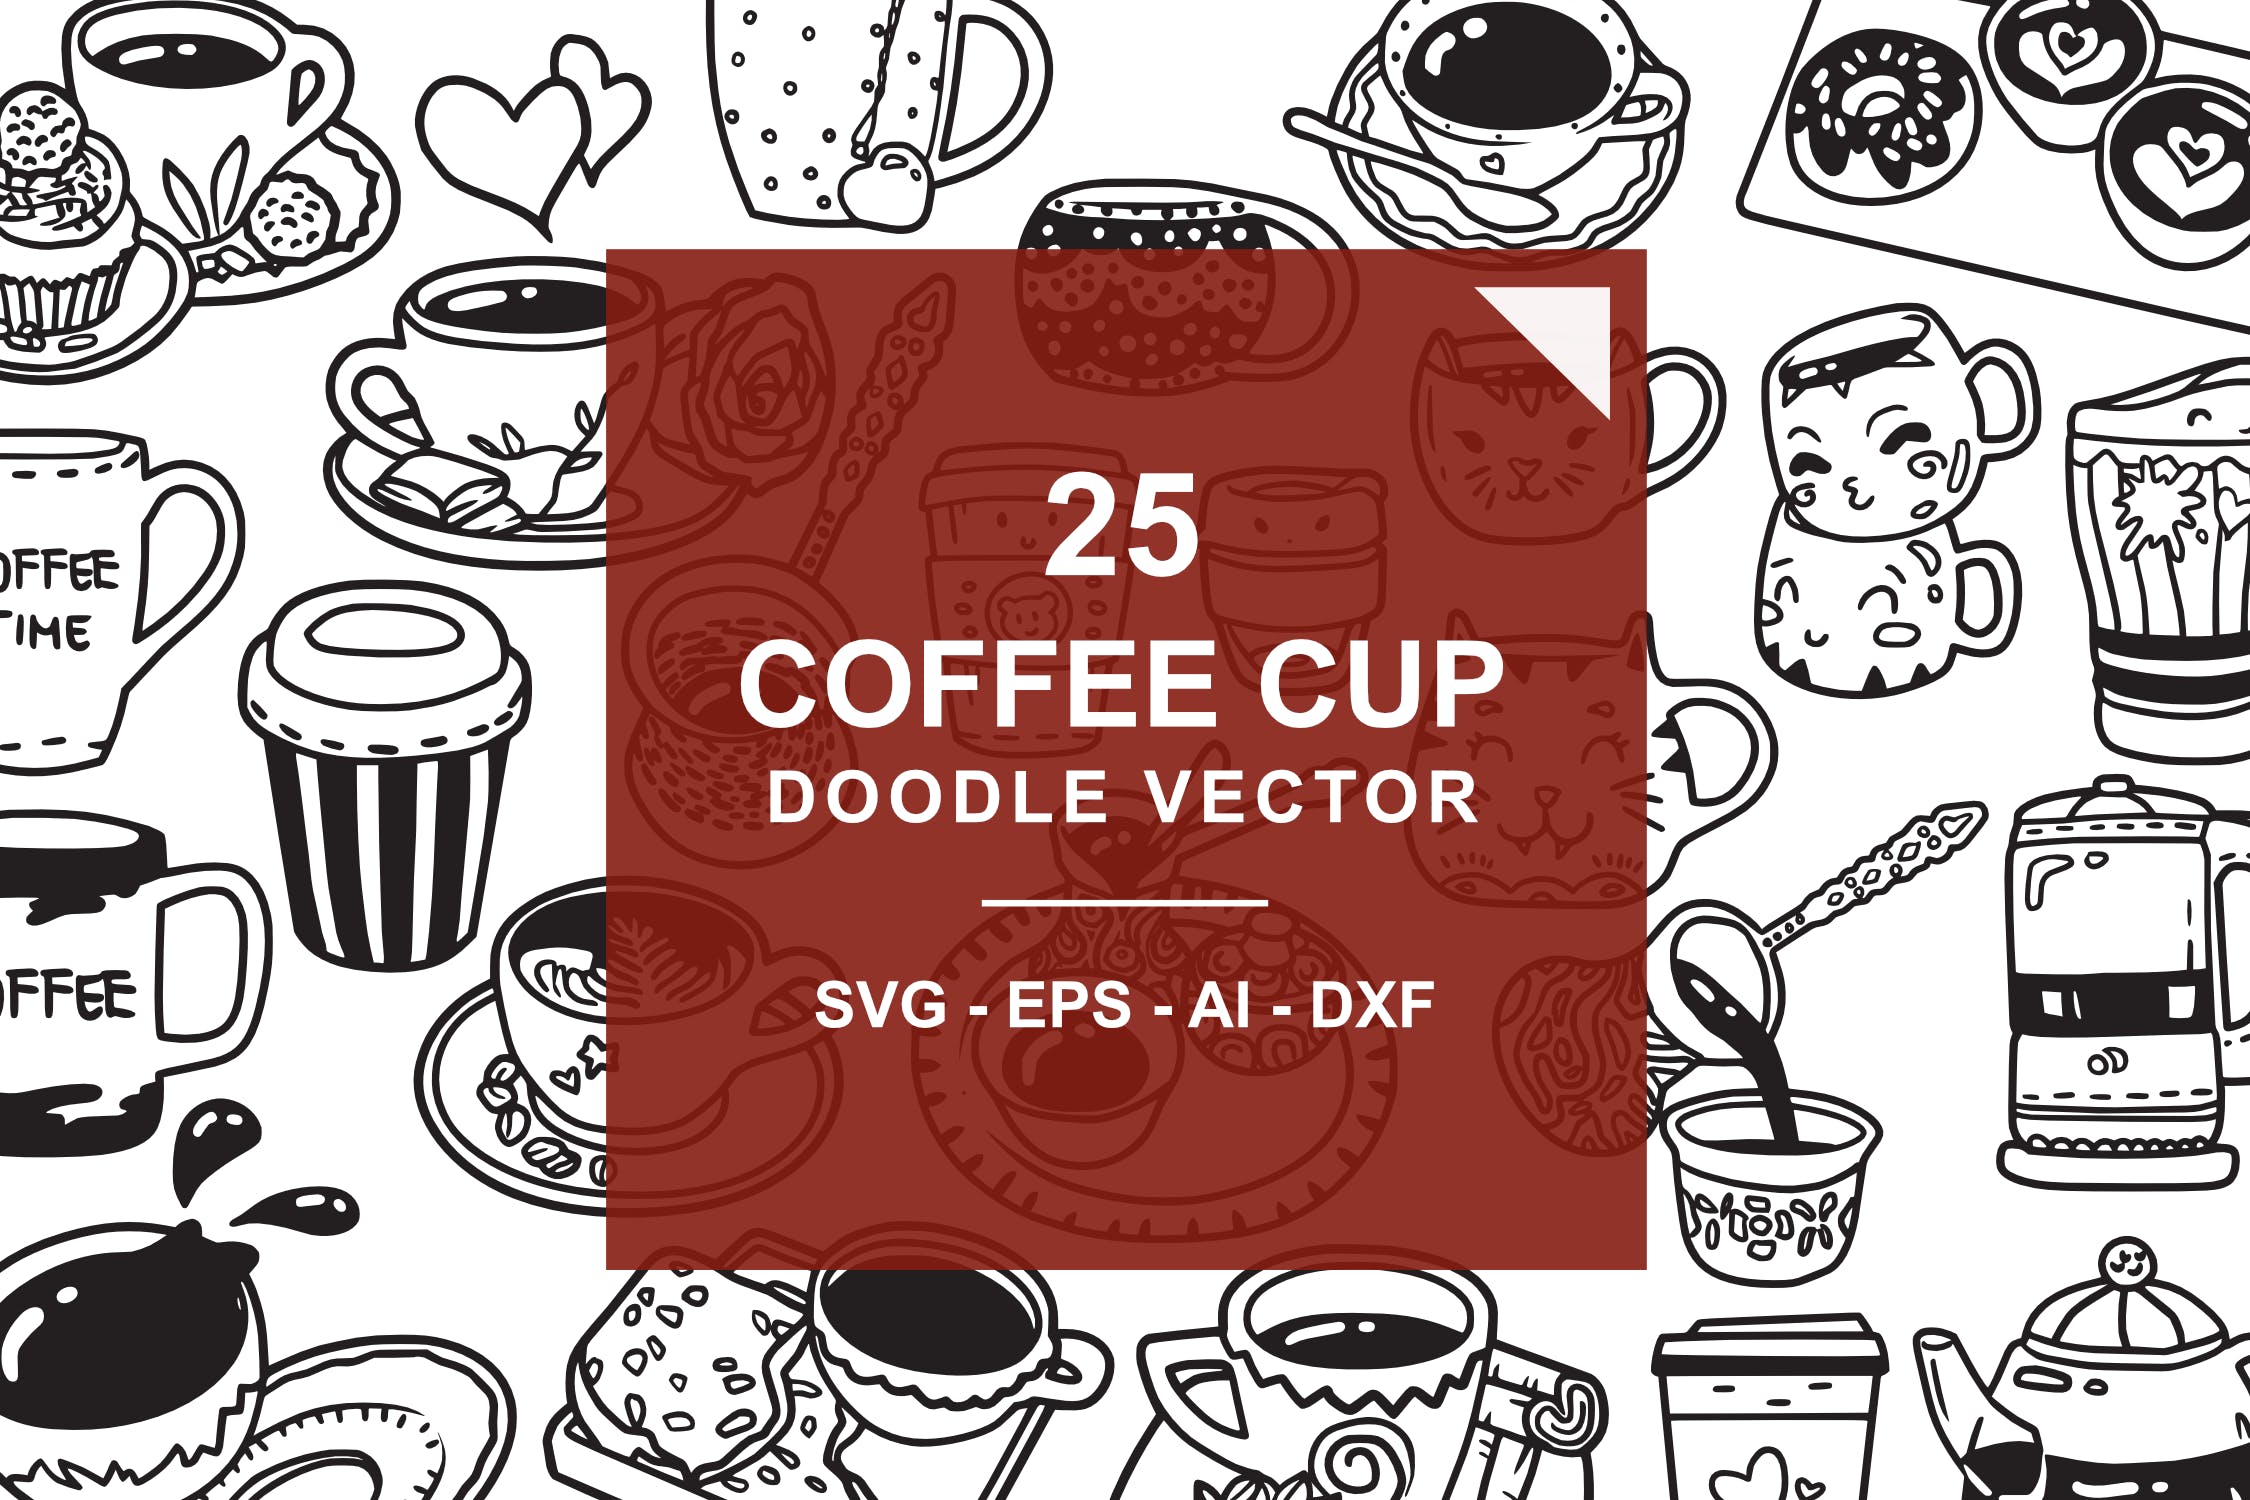 25款咖啡元素涂鸦手绘图案设计素材 Coffee Doodle Vector插图